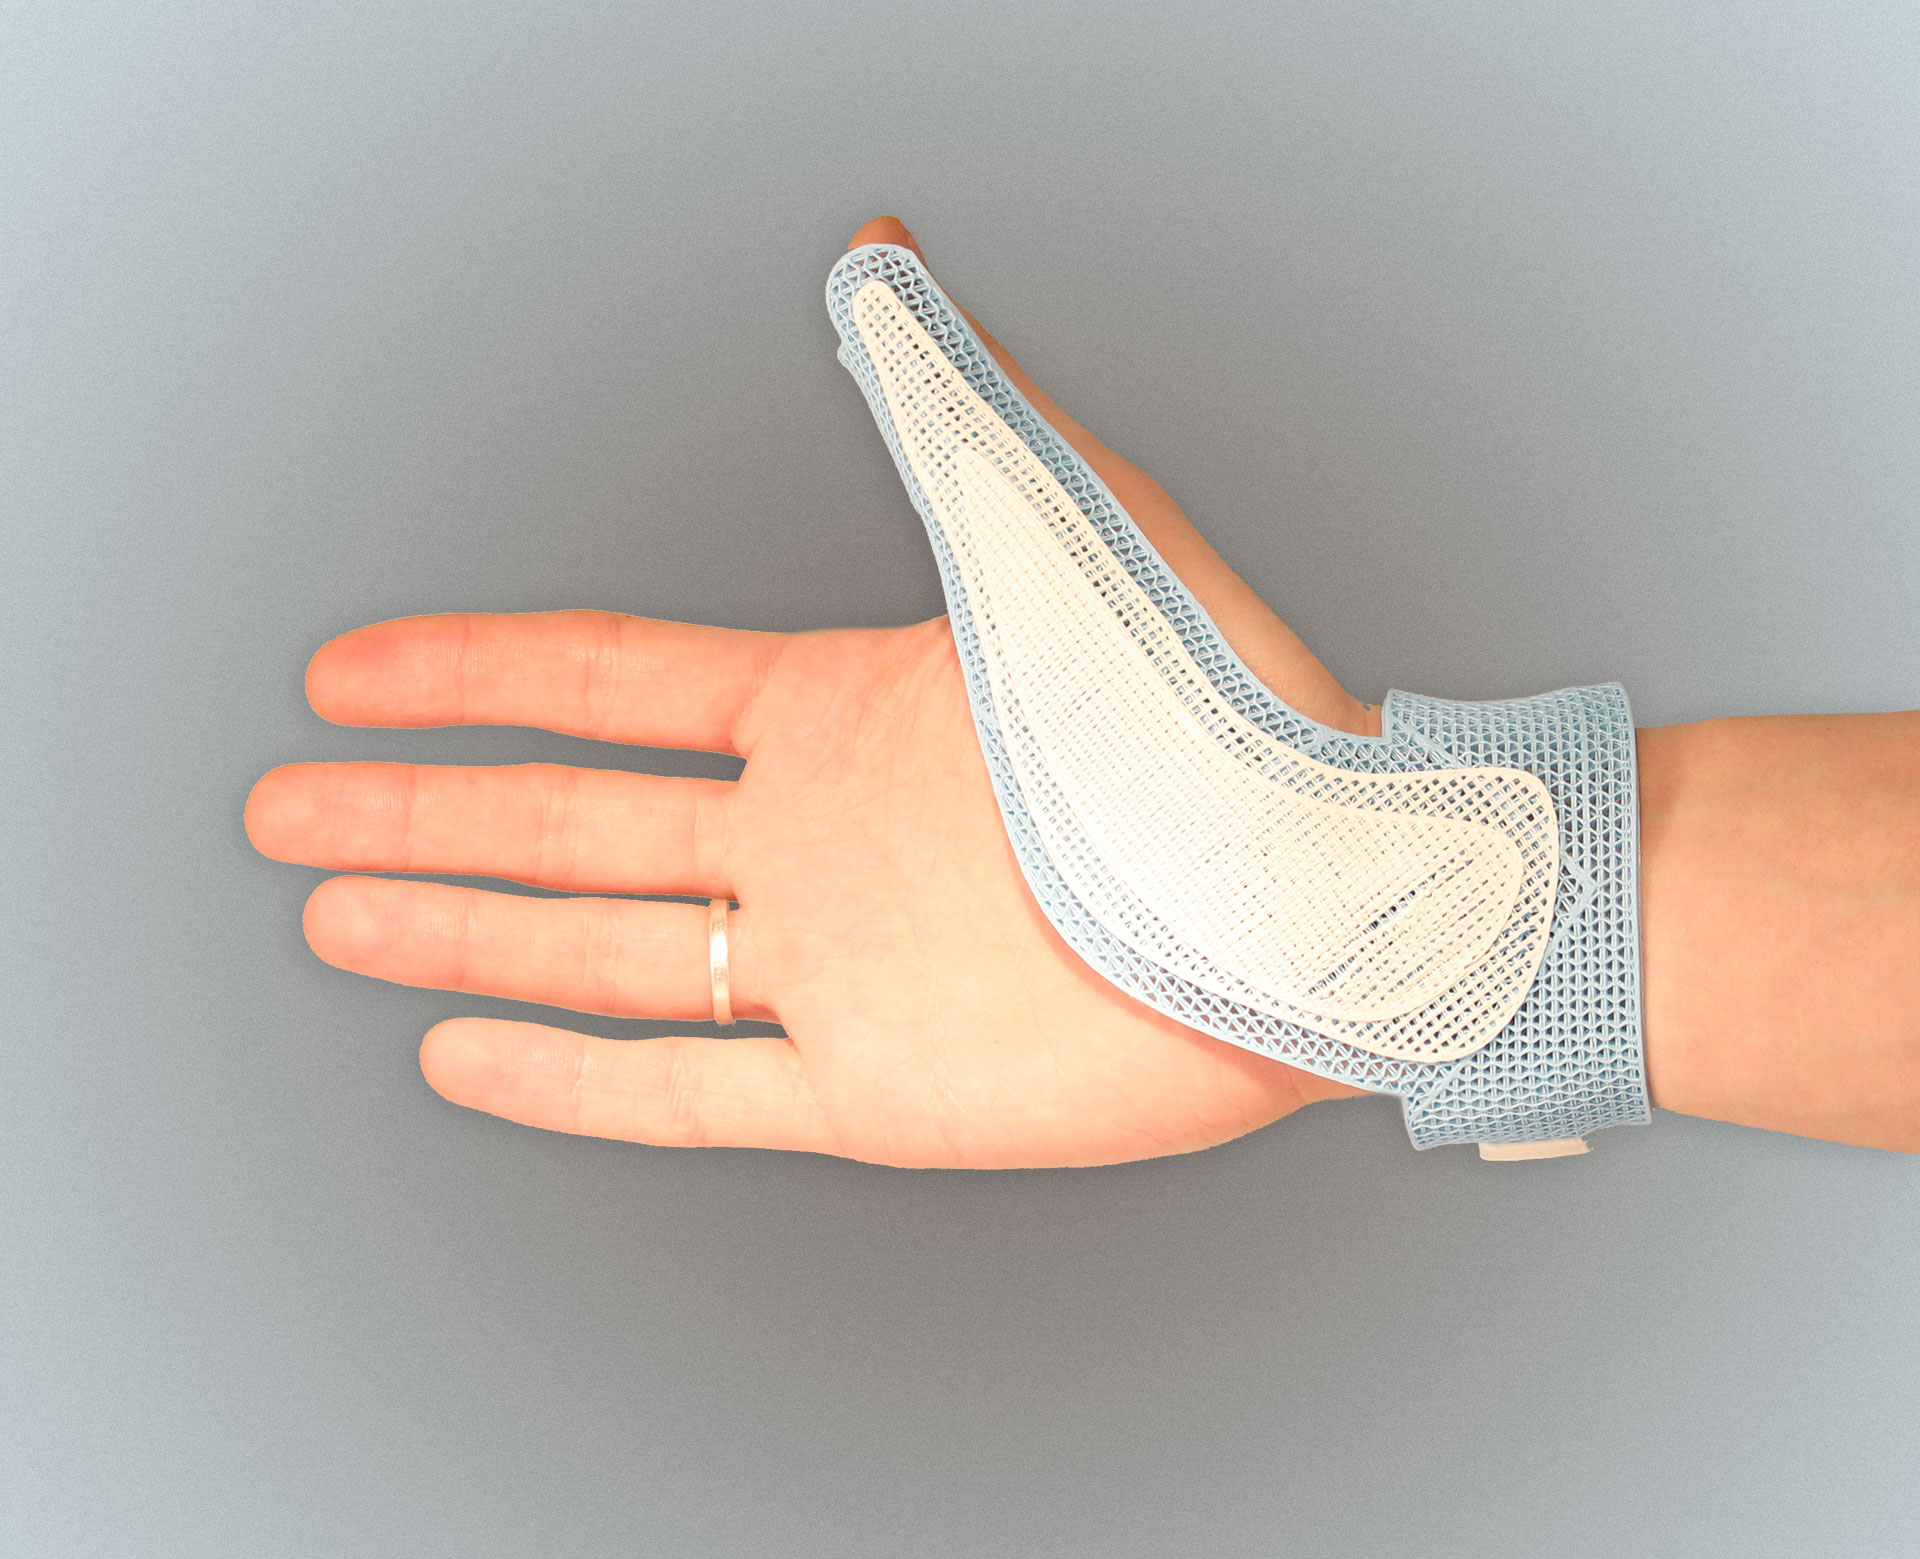 Вывих пальца – смещение костей суставов, которое часто сопровождается разрывом связок и суставной сумки.